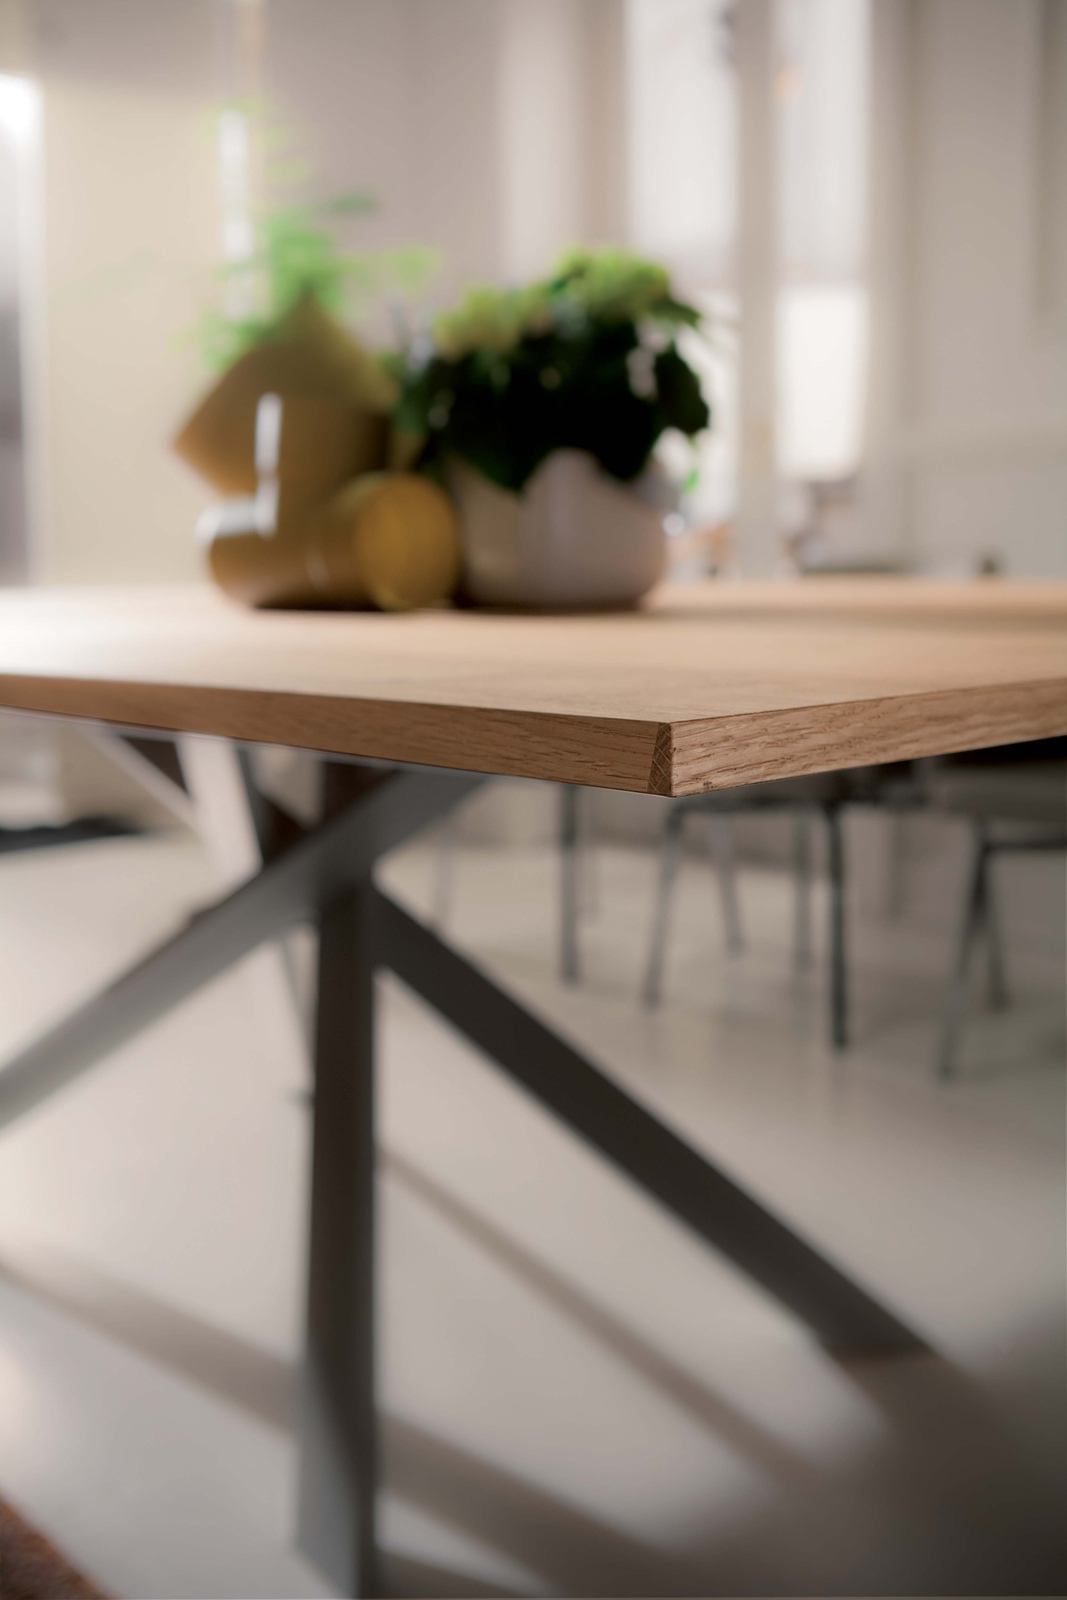 Dettaglio del piano in legno del tavolo mod. 4x4